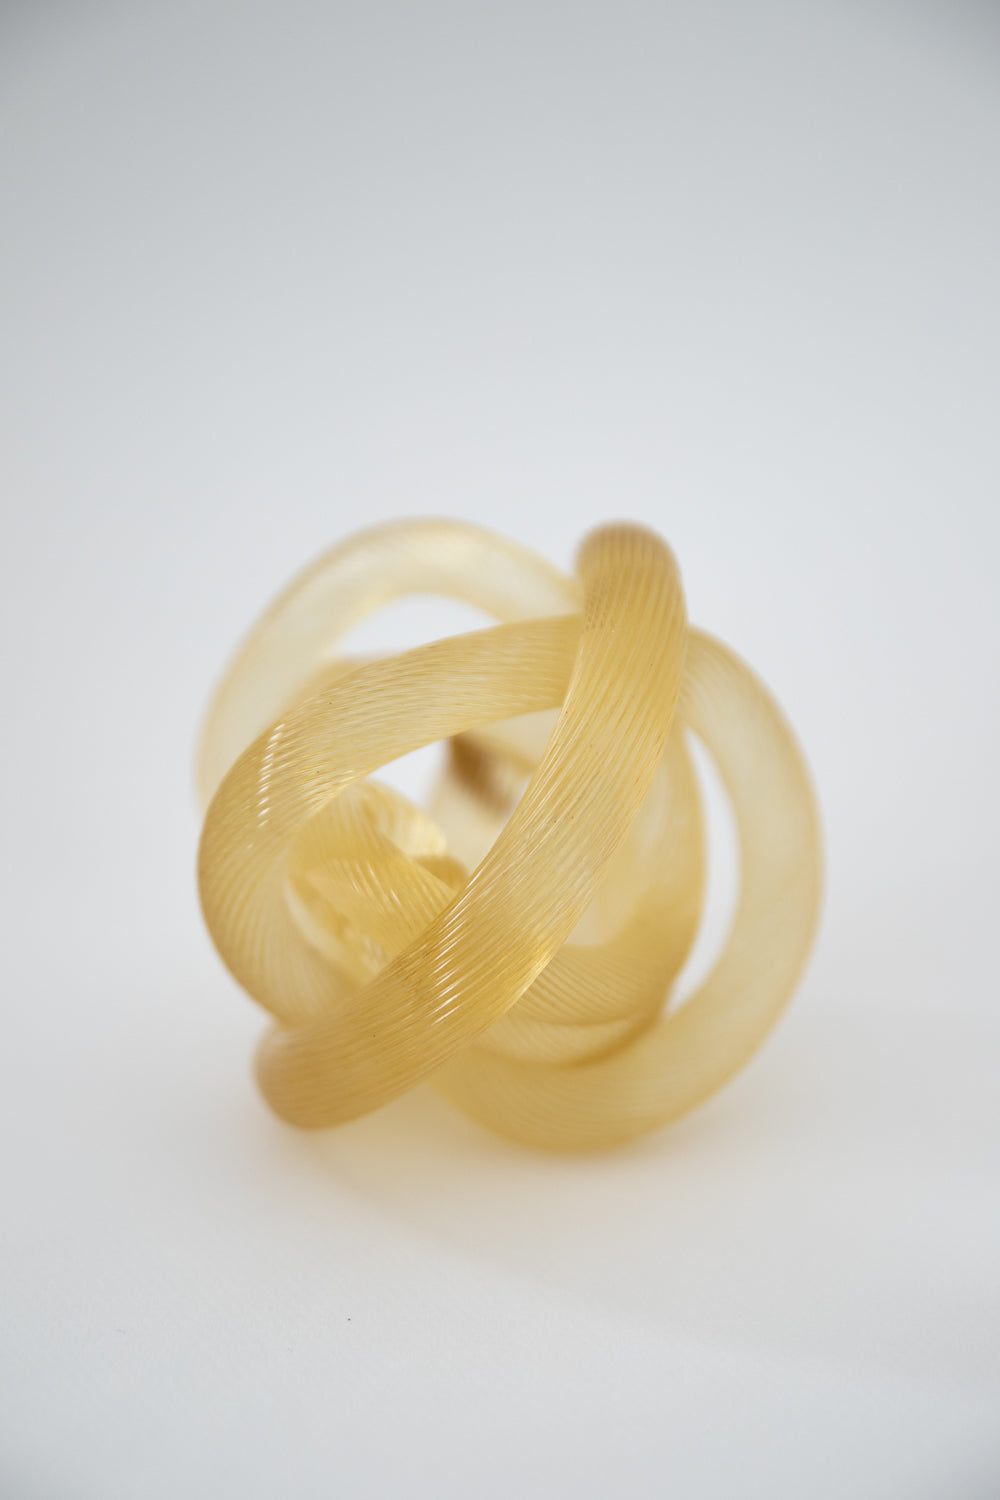 Glass Knot Sculpture